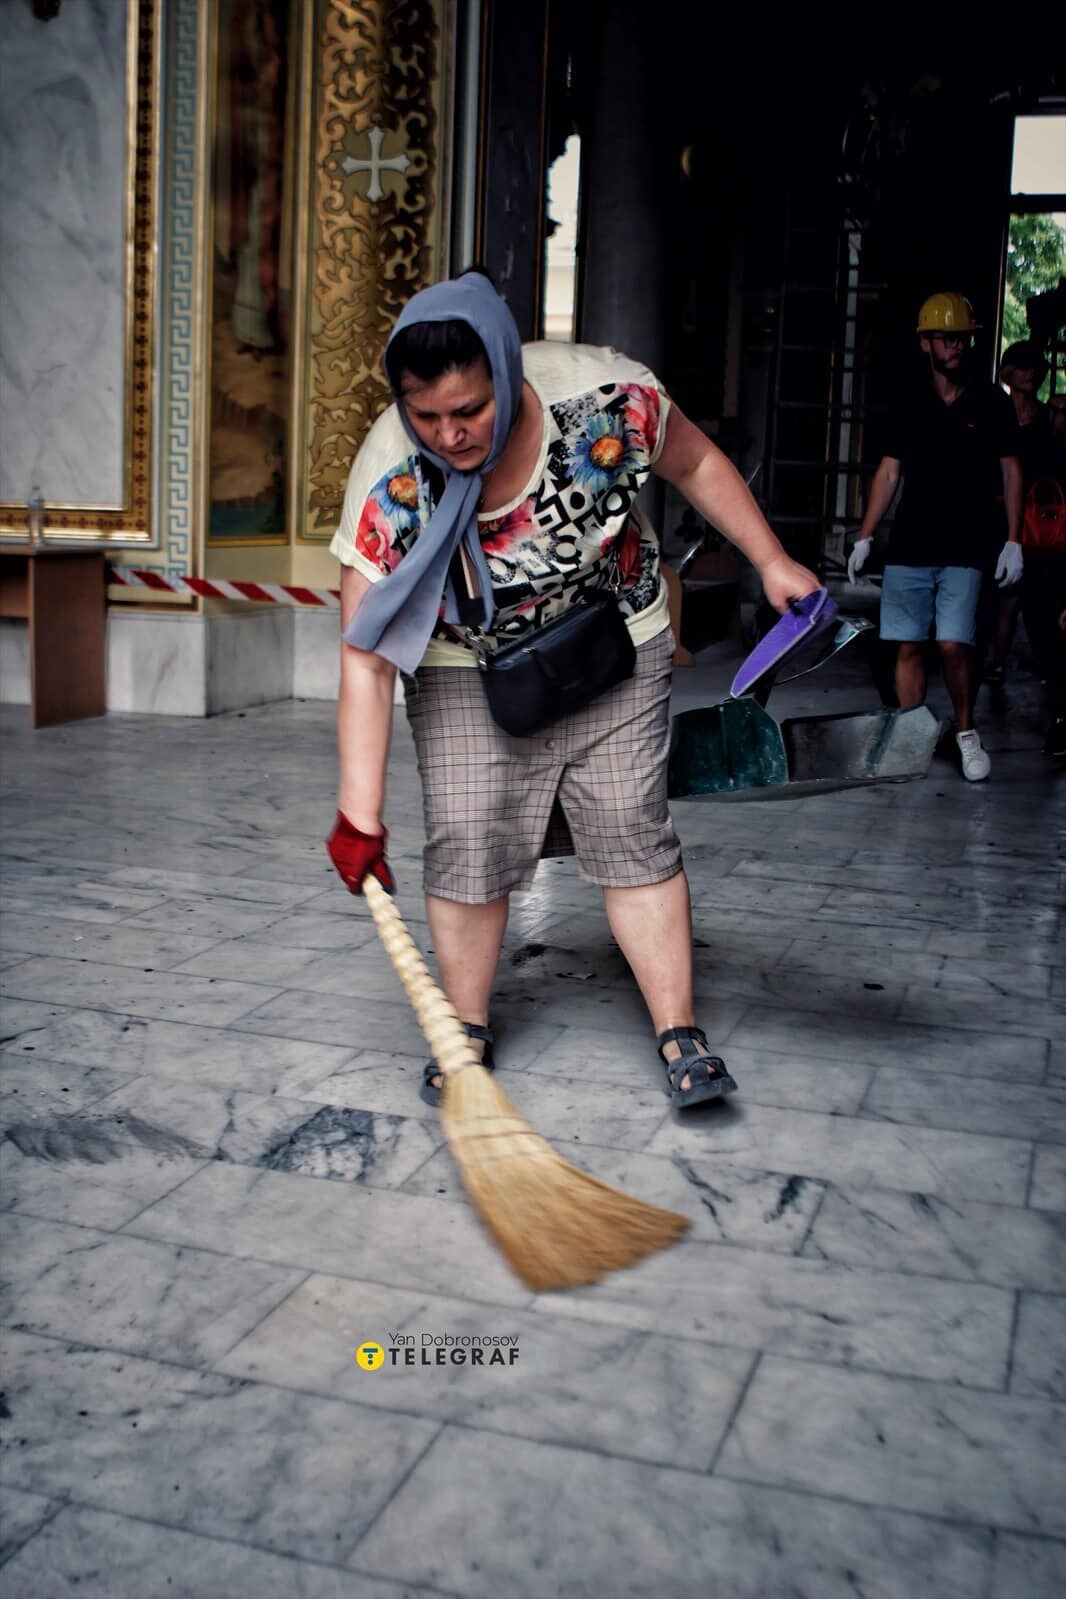 "Враг не верит в Бога": фотограф показал апокалиптические кадры разрушенного центра Одессы